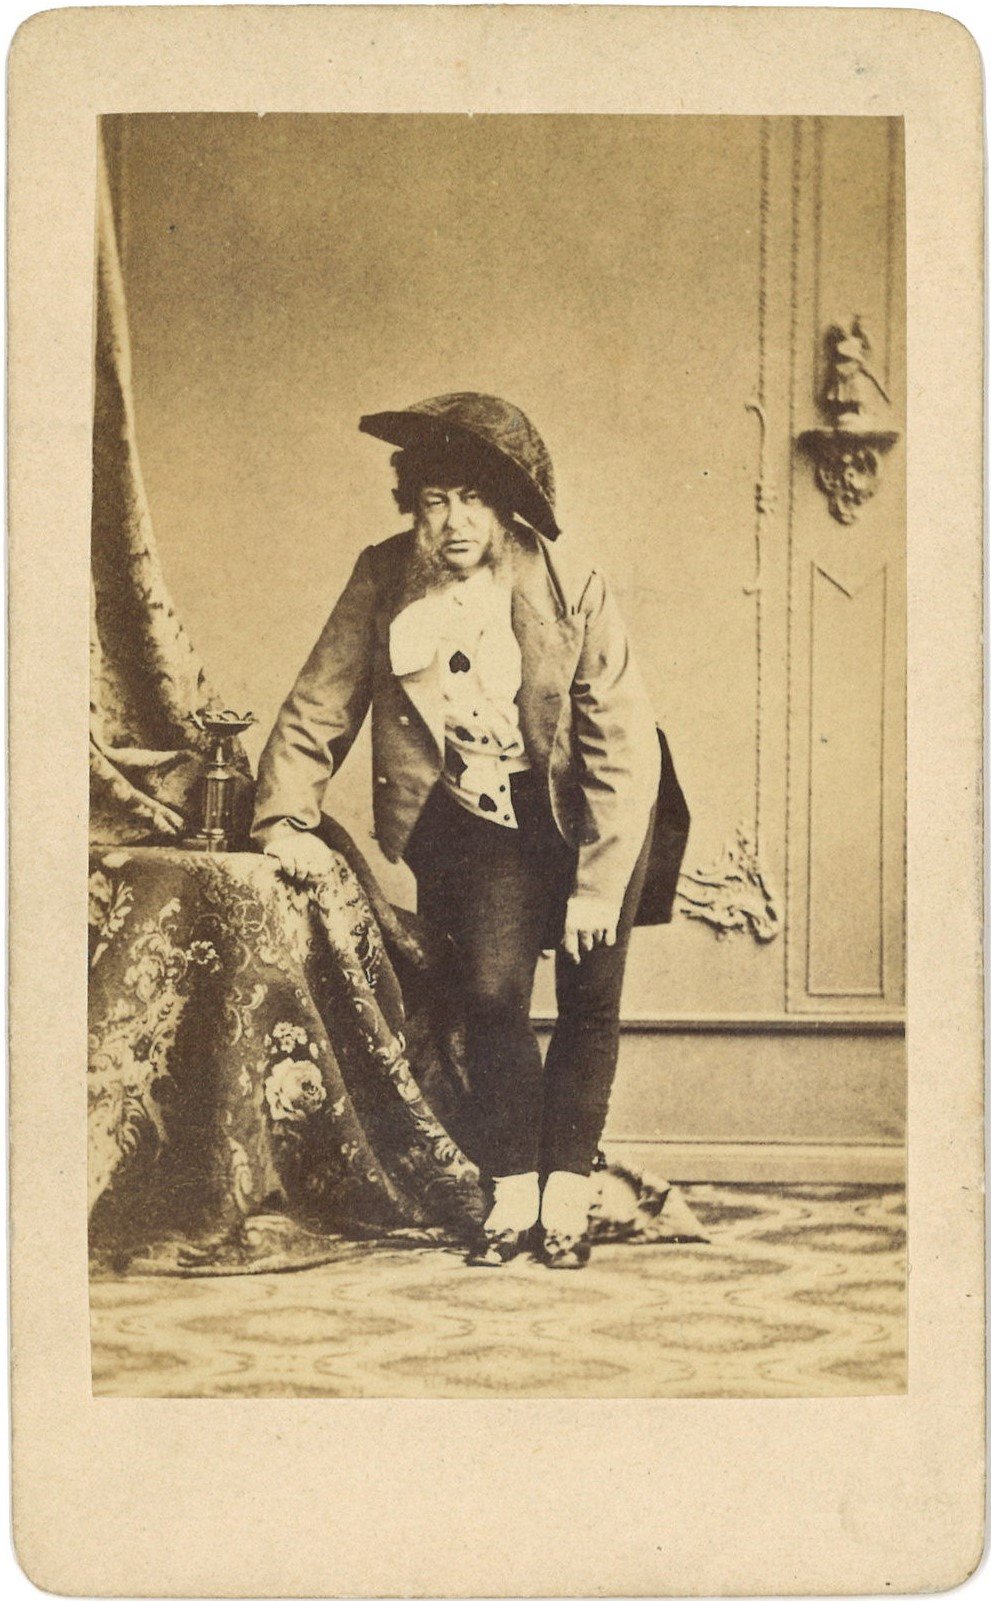 Neumann, August (1824-1894), Schauspieler (Landesgeschichtliche Vereinigung für die Mark Brandenburg e.V., Archiv CC BY)